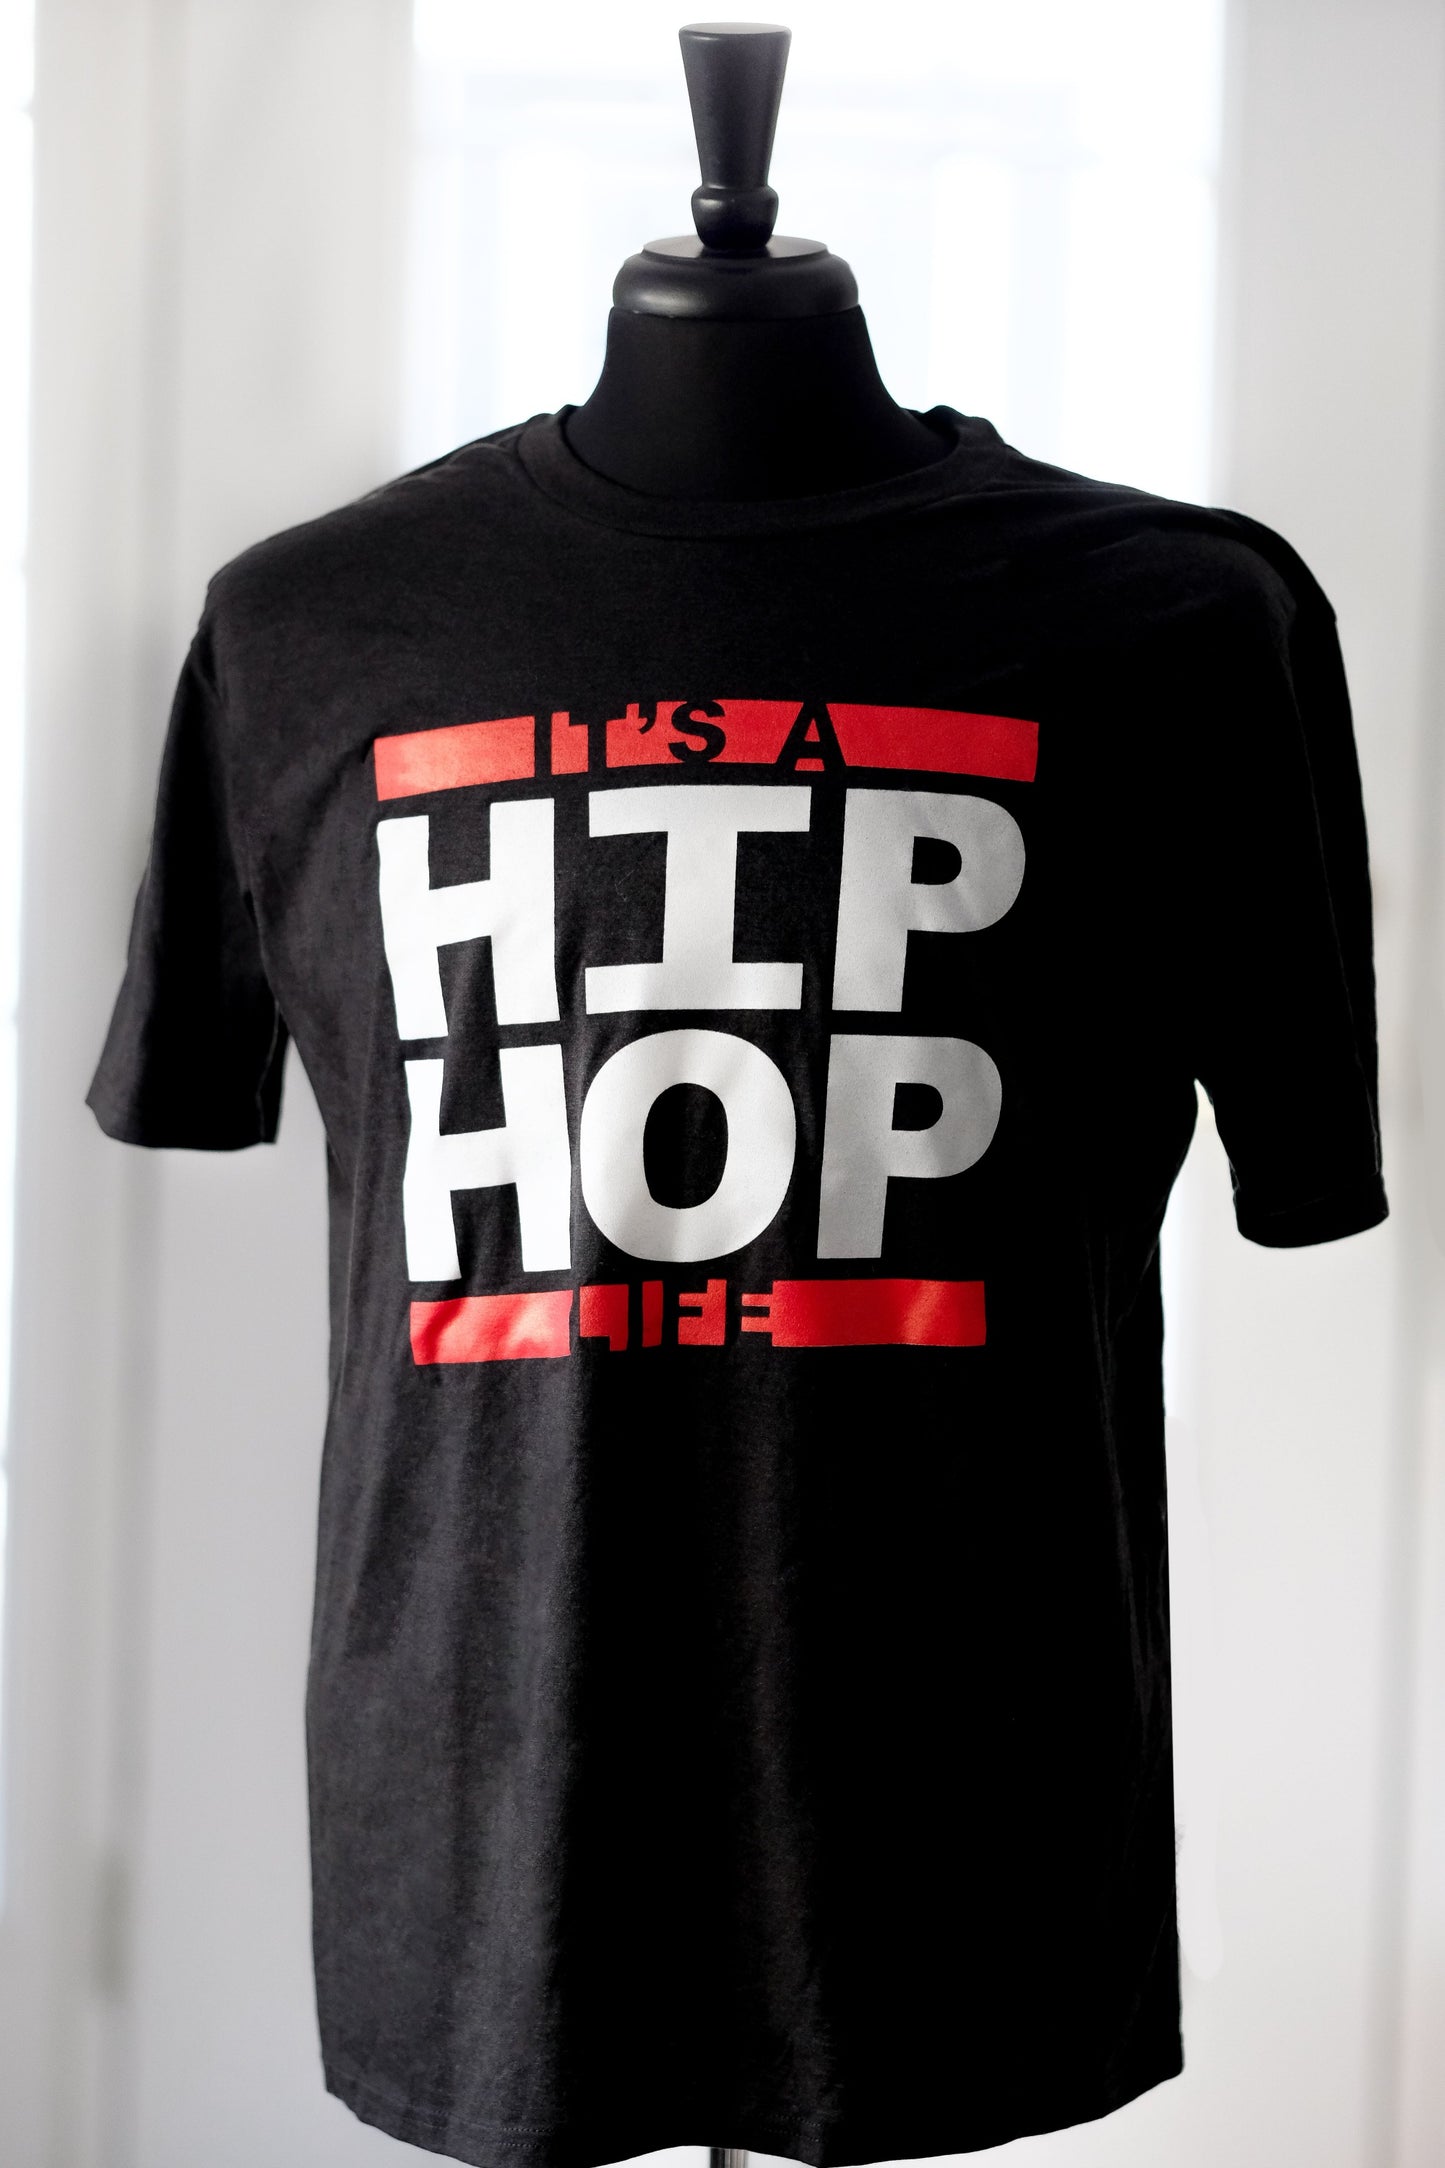 Vinyl + Men's Hip Hop Life T Shirt